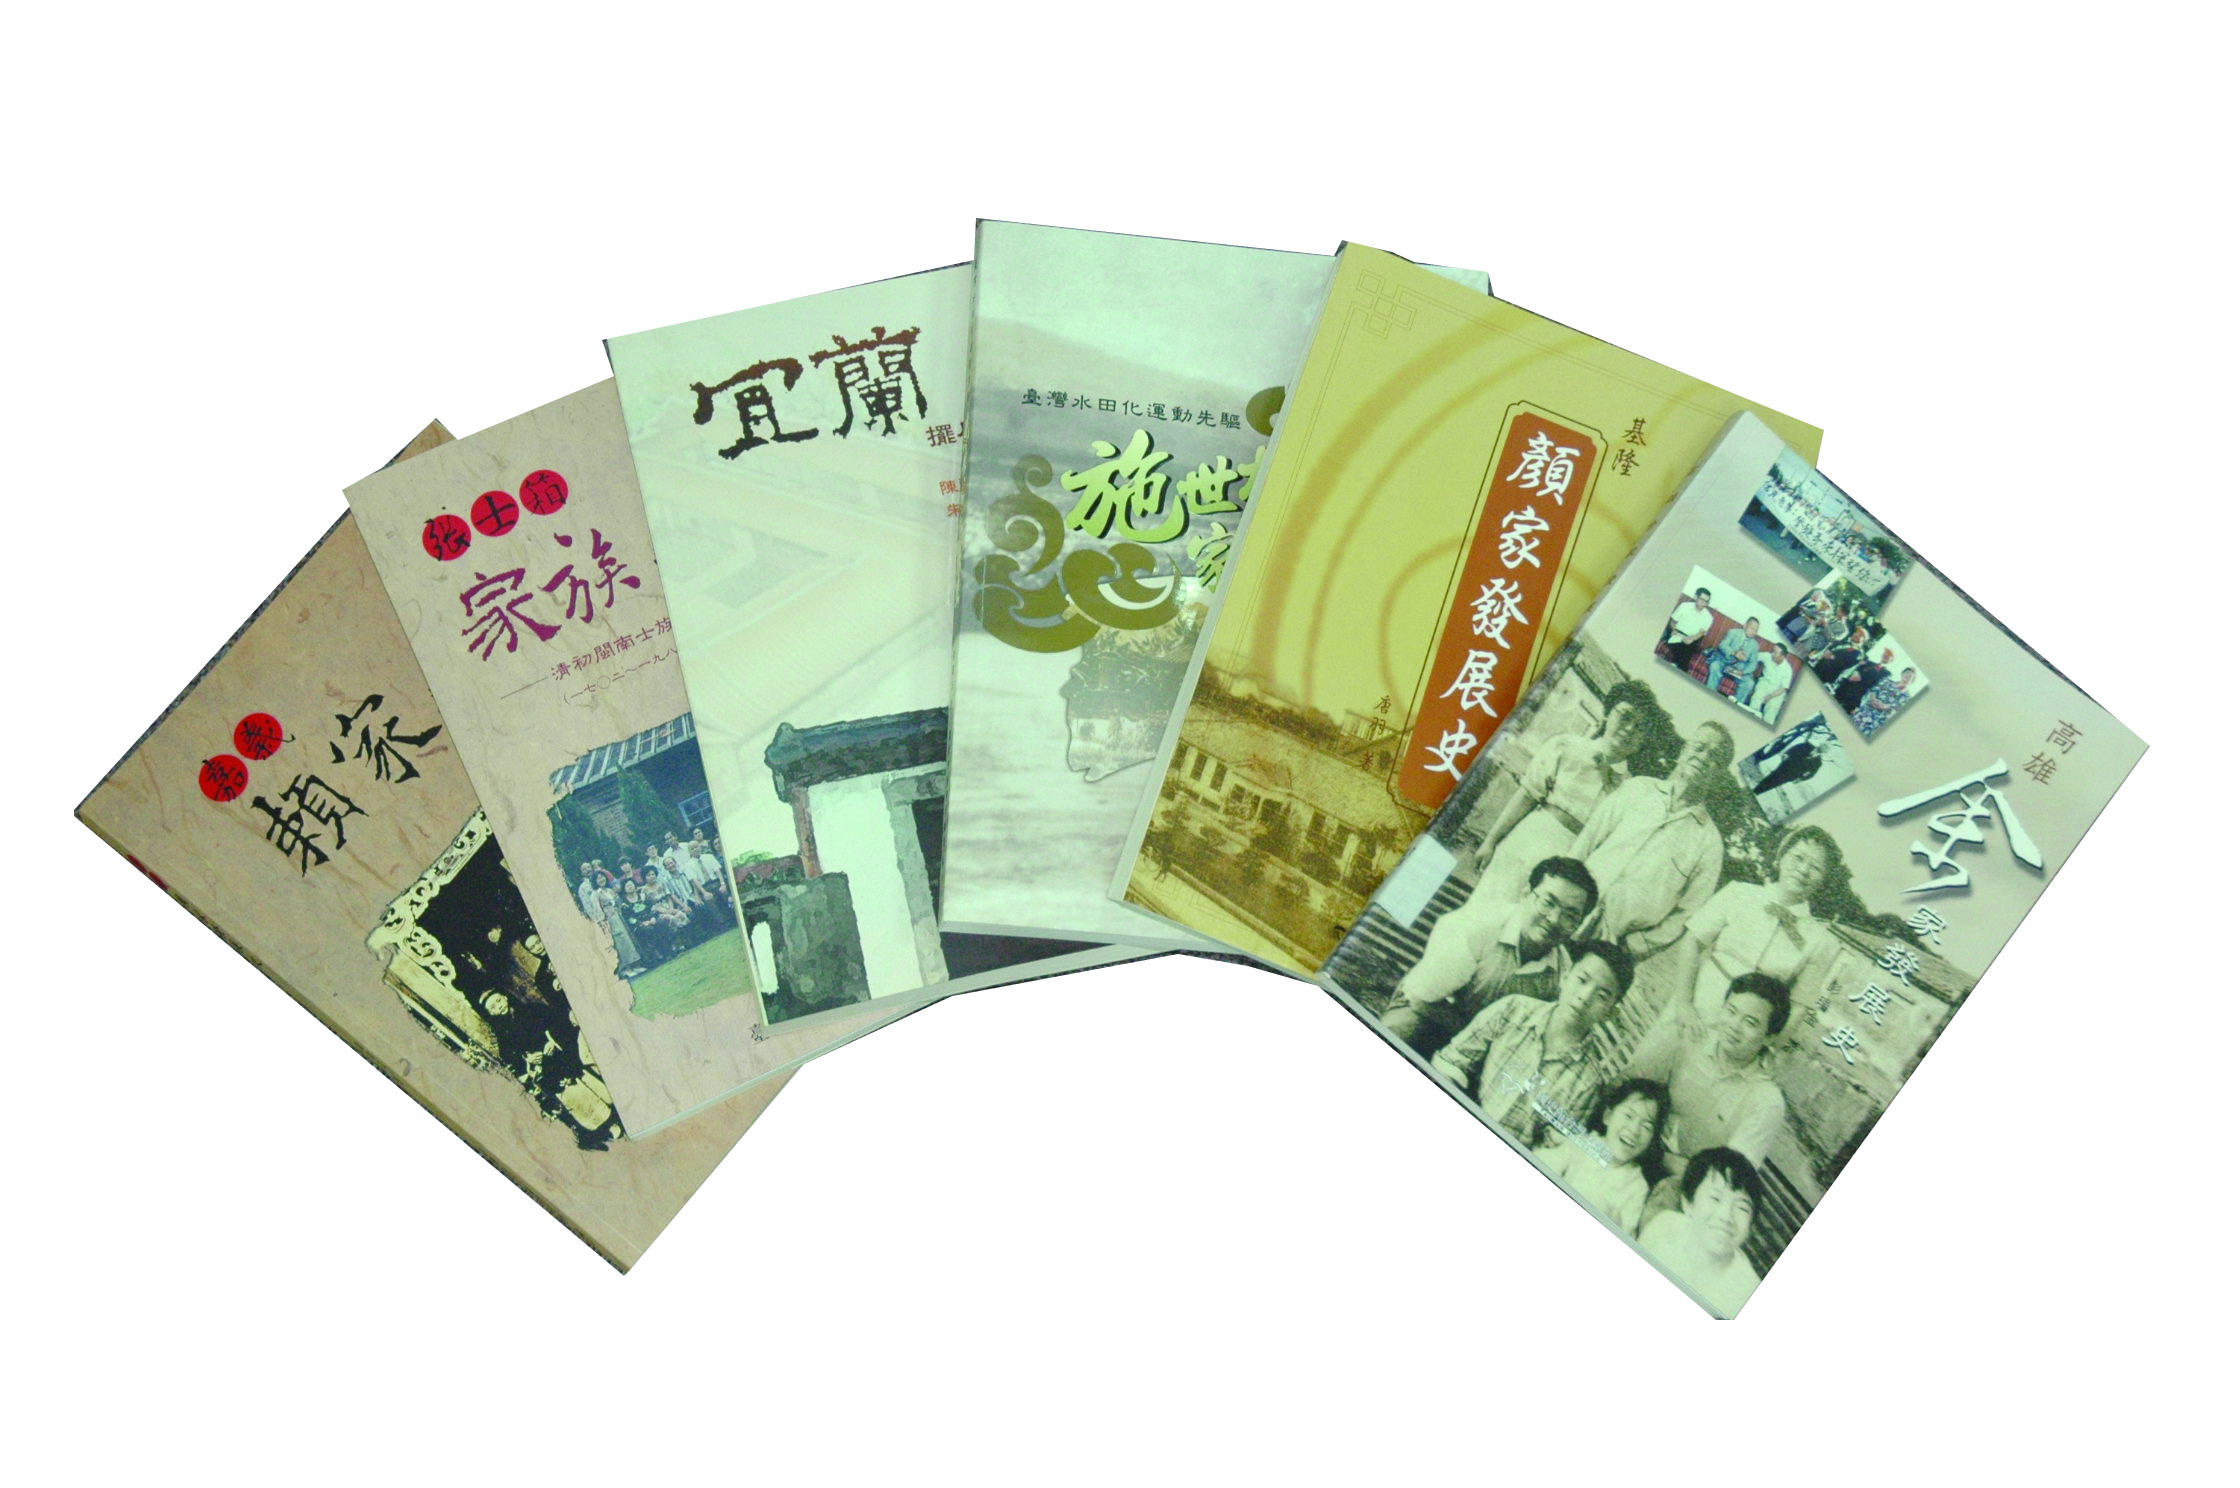 本館出版品推廣行銷及普羅化-提升臺灣史教育、研究環境